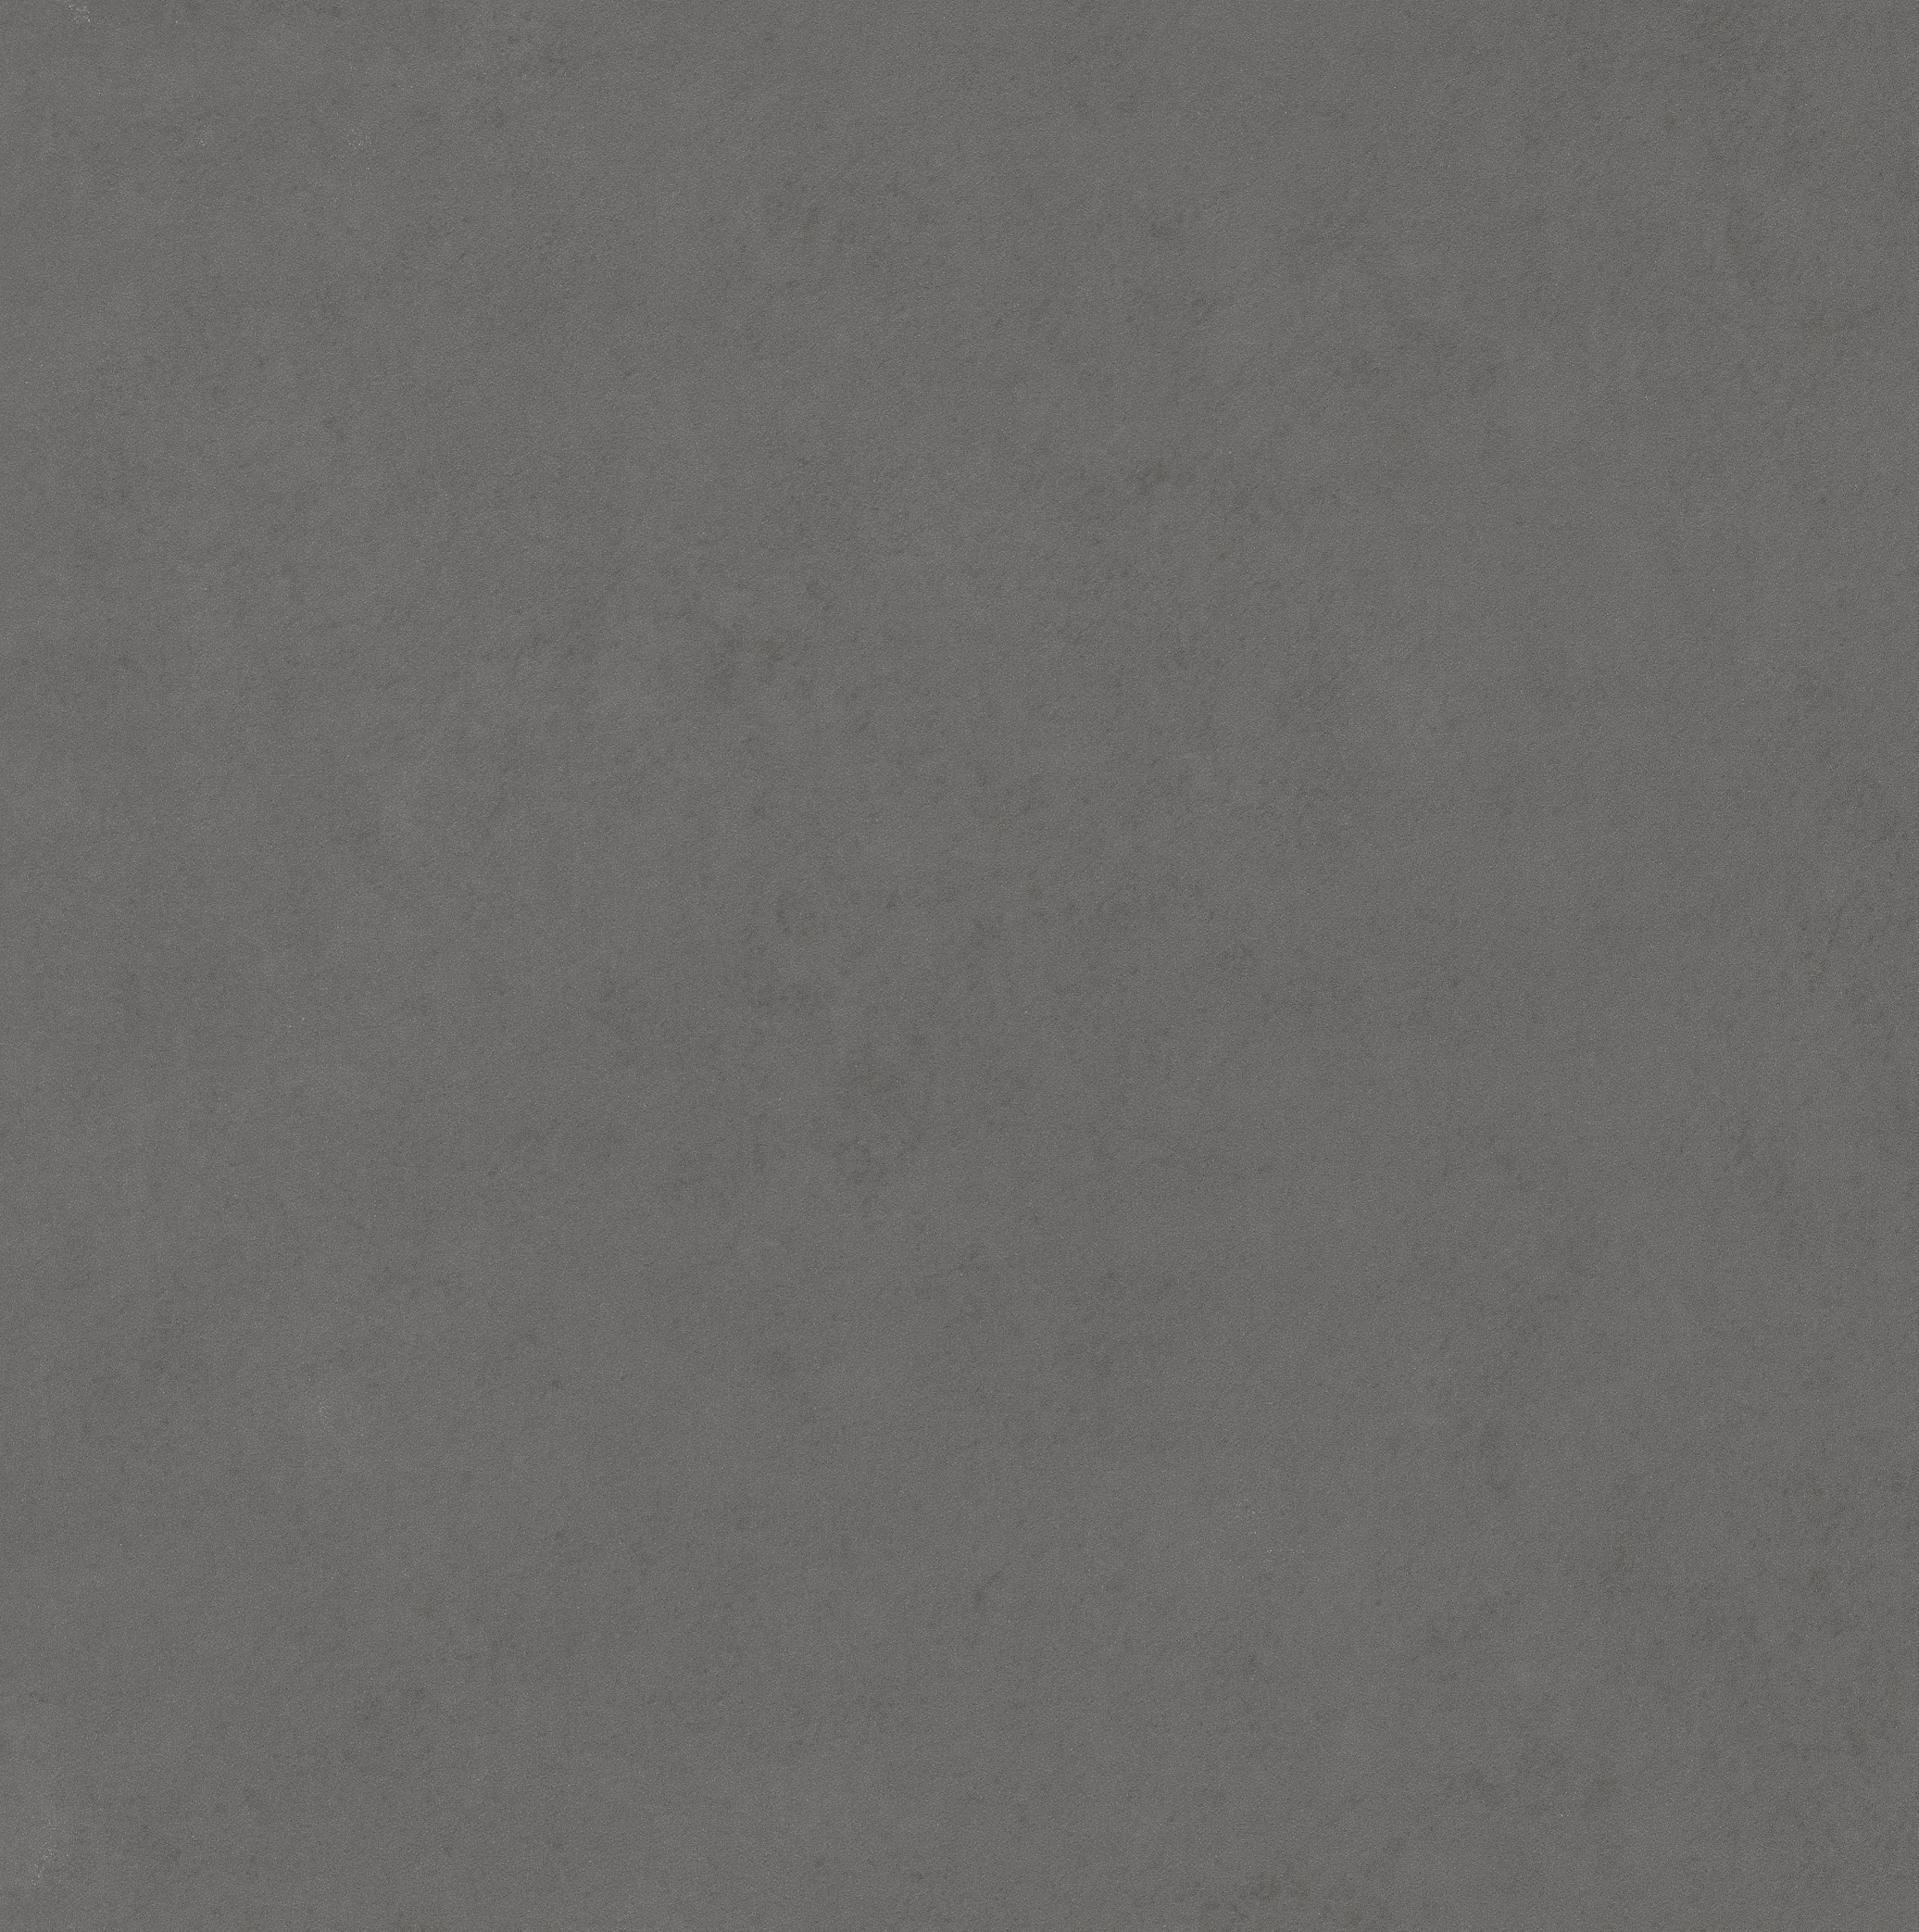 Boden/Wand Fliese Scope dark grey 60x60